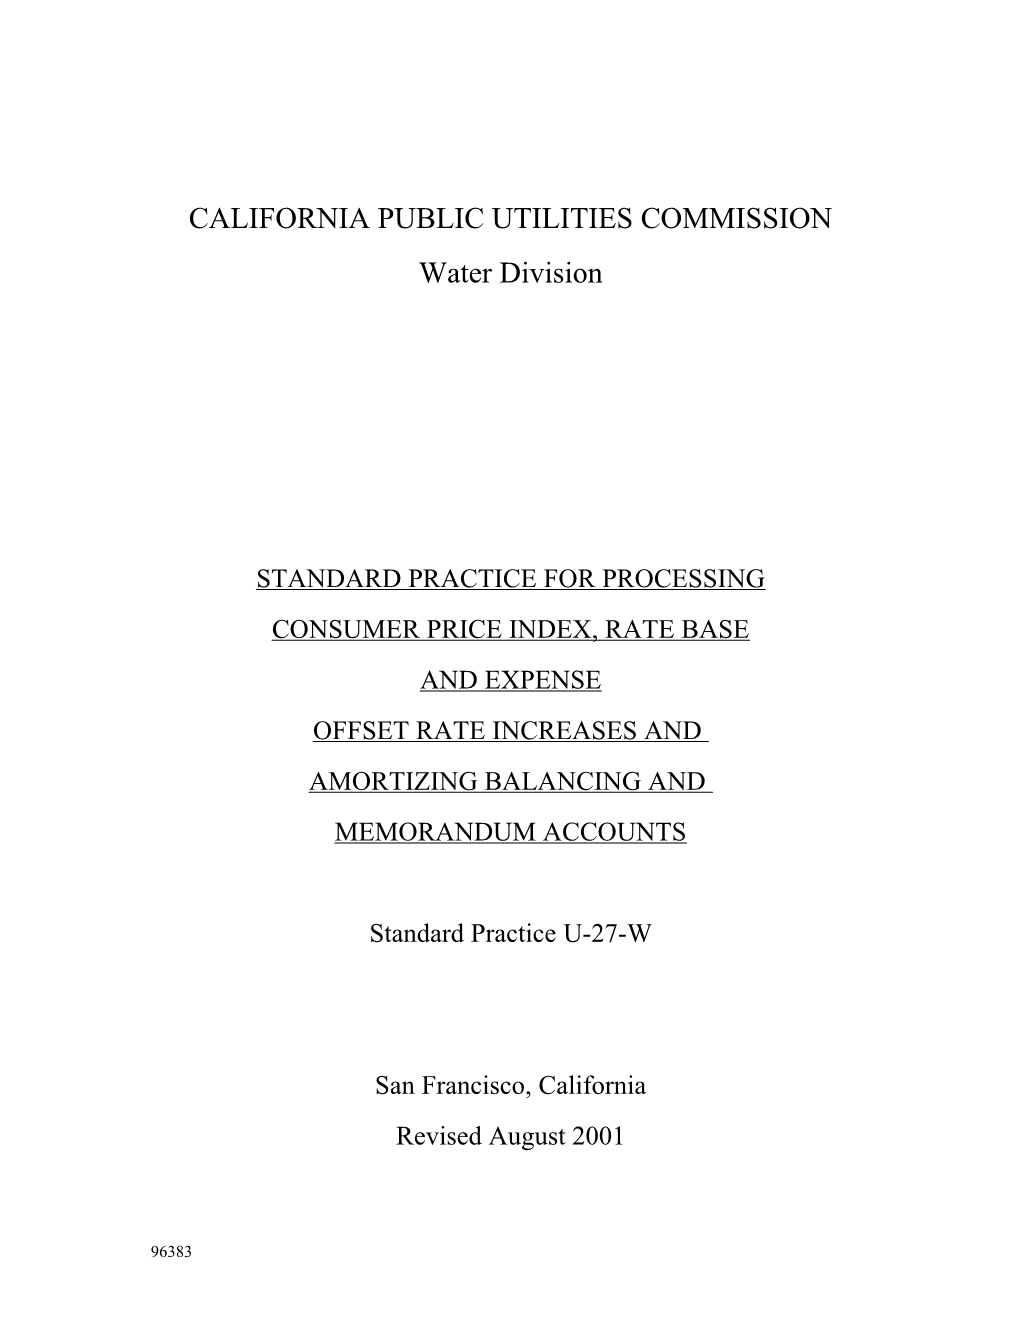 California Public Utilities Commission s2